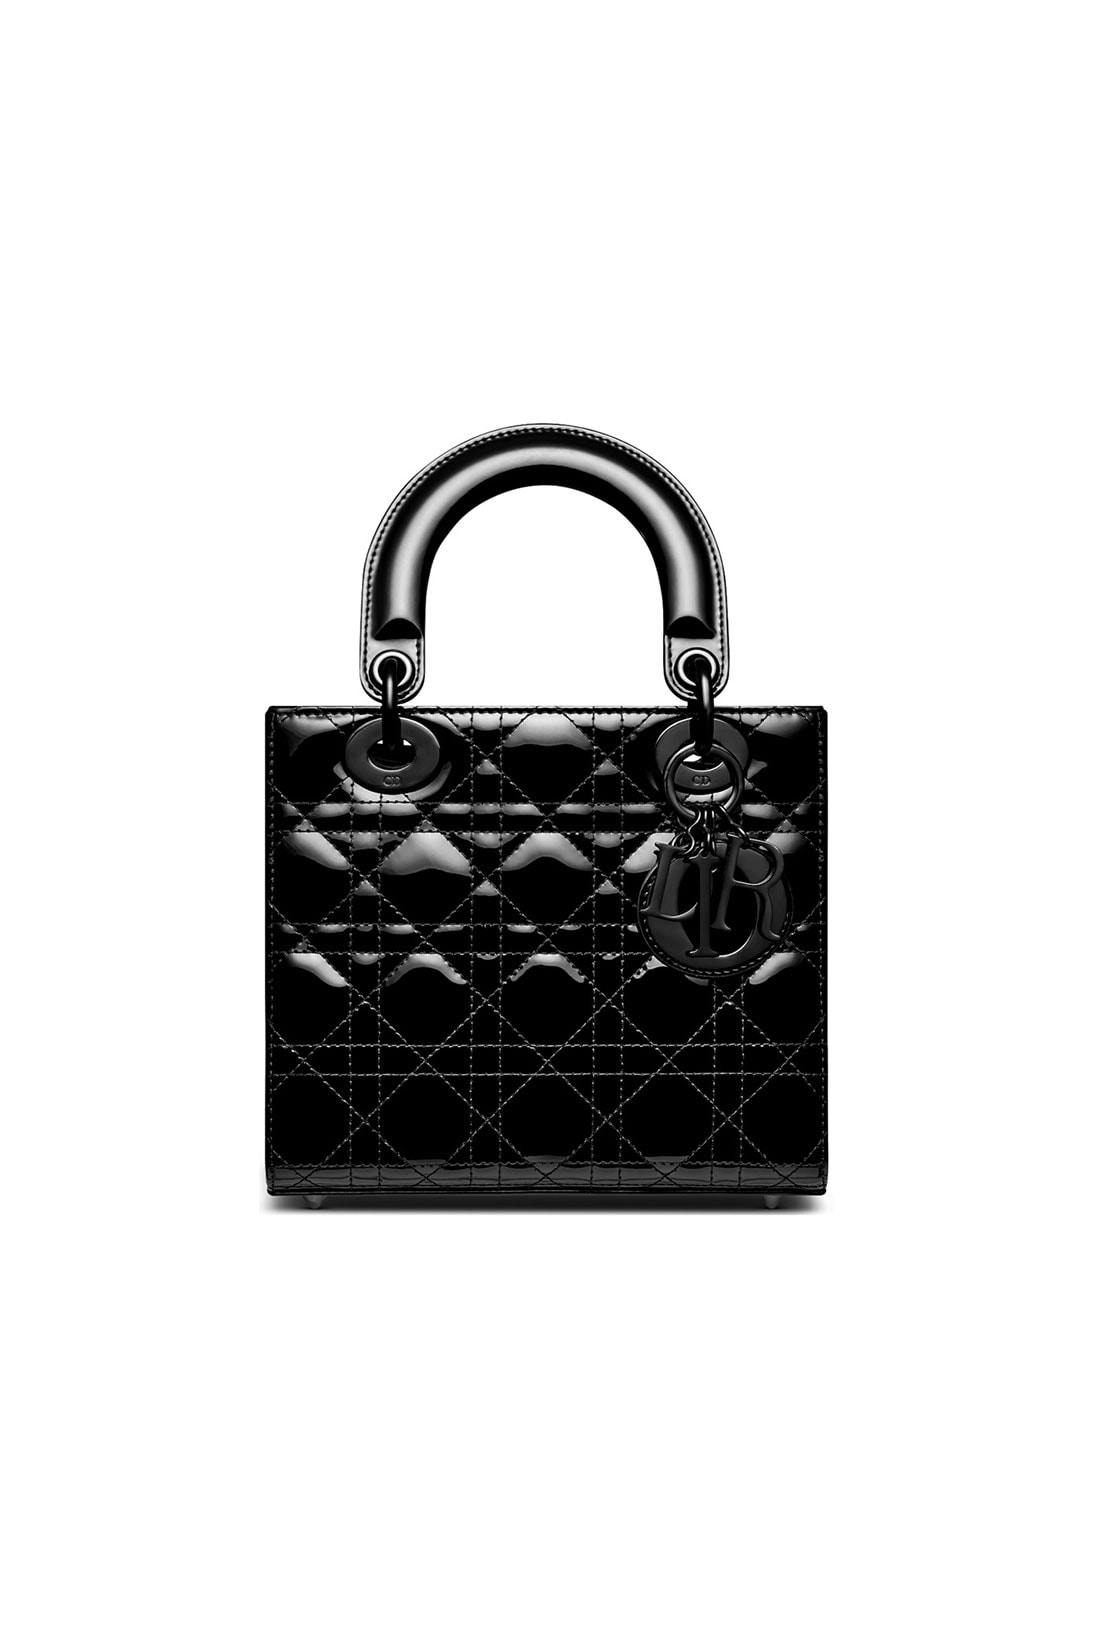 Lady Dior Ultra Glossy Handbag Black Maria Grazia Chiuri Small